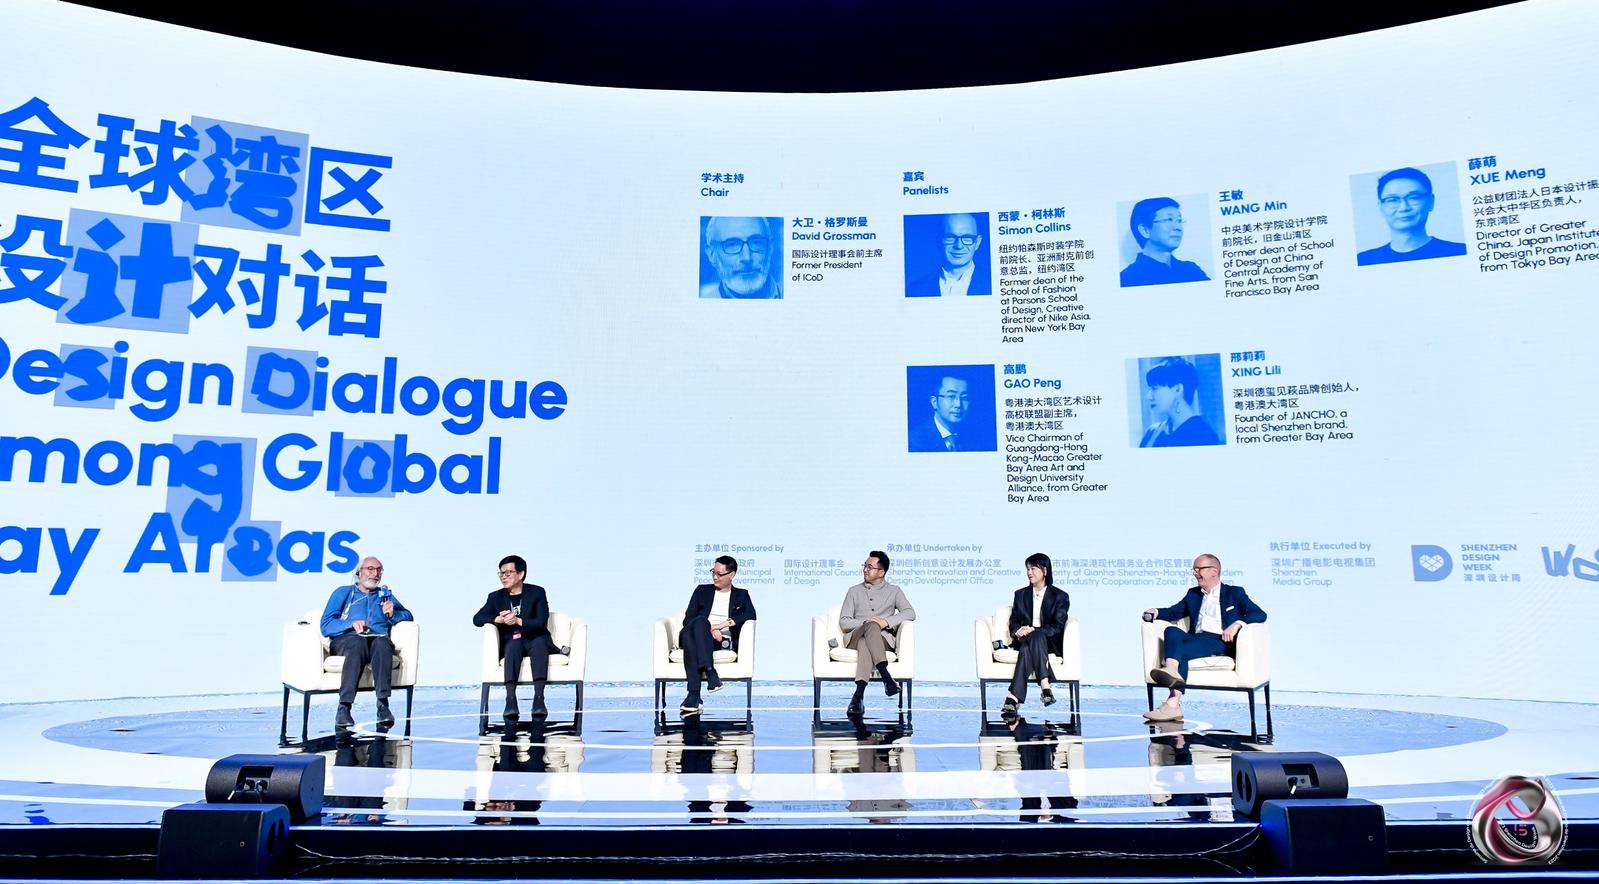 汇聚世界顶尖人才 探讨未来设计趋势 深圳举办全球设计师大会